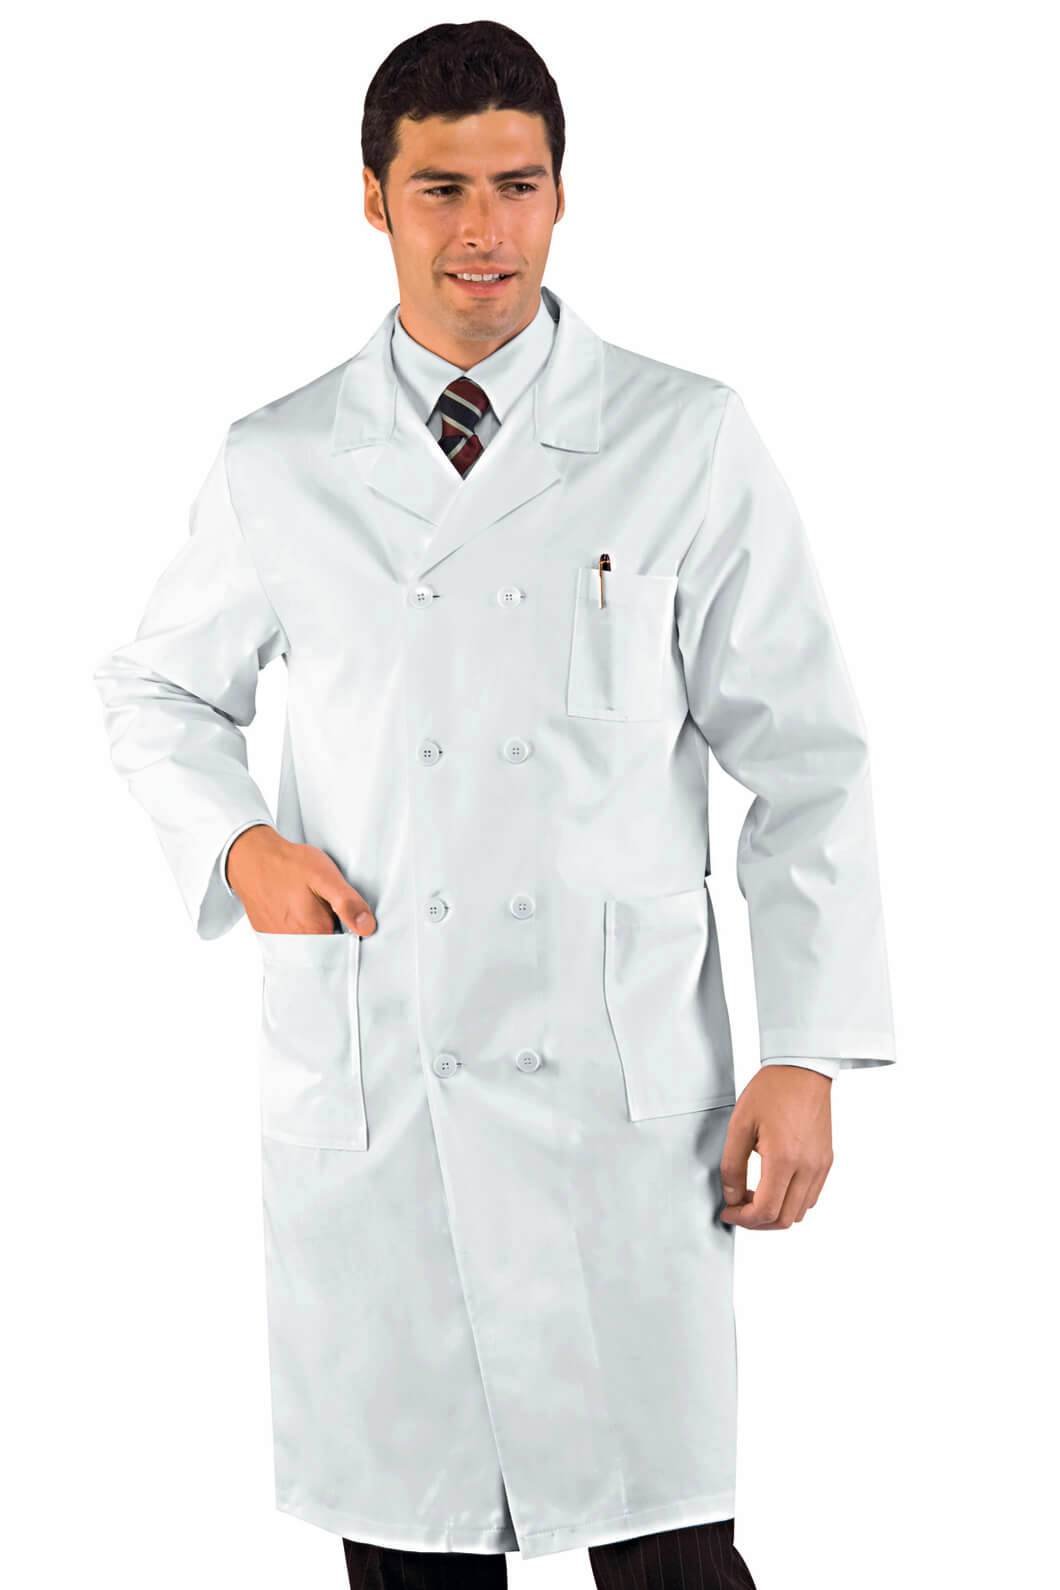 Isacco Medizinisches Hemd, doppelt, Weiß, M, 100% Baumwolle